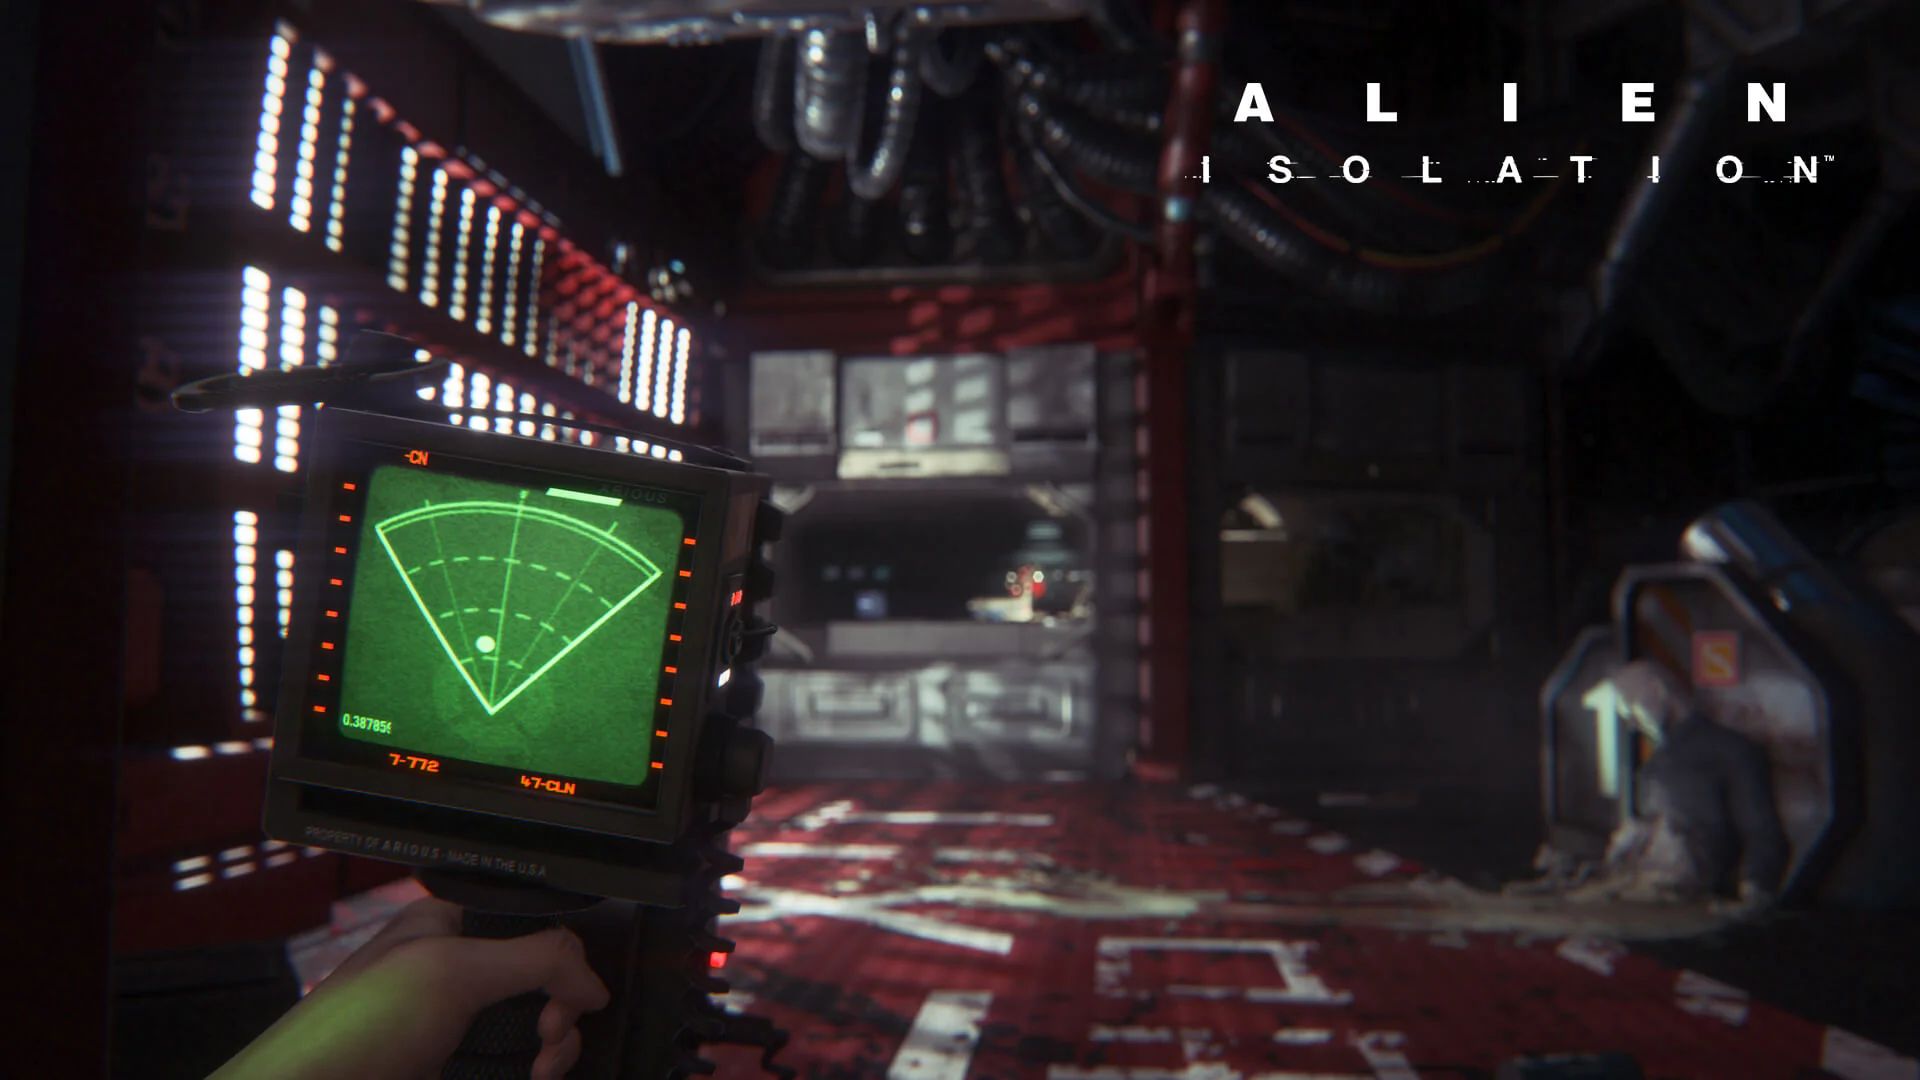 映画「エイリアン」のホラーゲーム『Alien: Isolation』のPC版がEpic Games Storeで無料配布中。Steamでは国内からは購入不可な一品_001